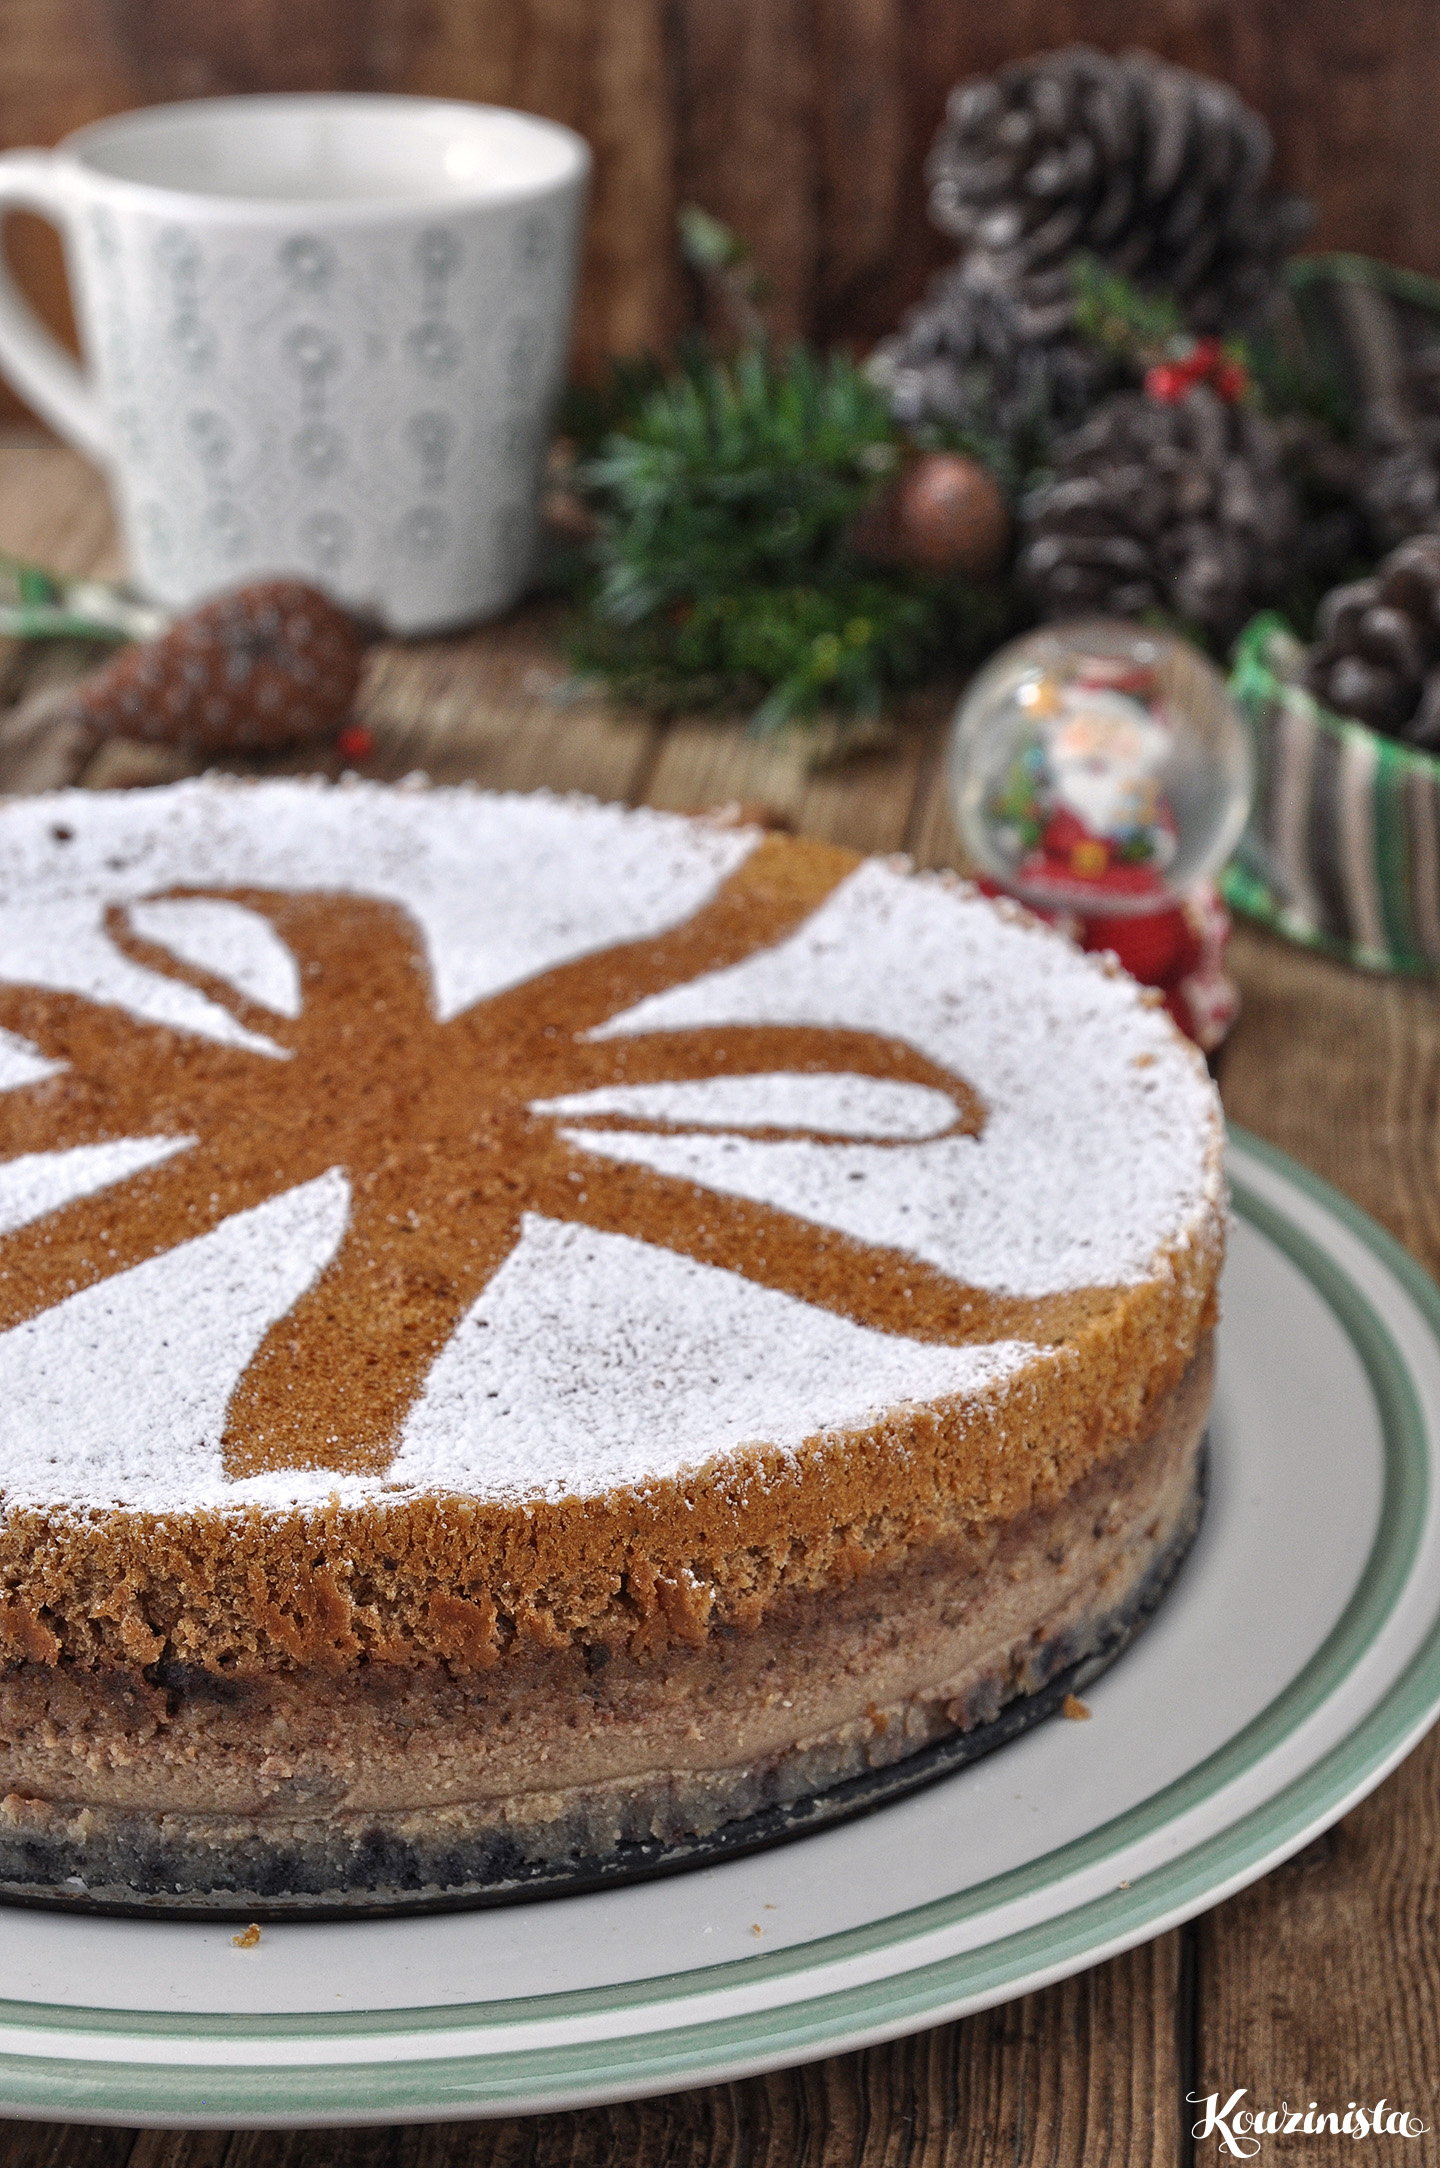 Χριστουγεννιάτικο μαγικό κέικ με μπαχαρικά & καρύδια / Christmas spiced walnut magic cake